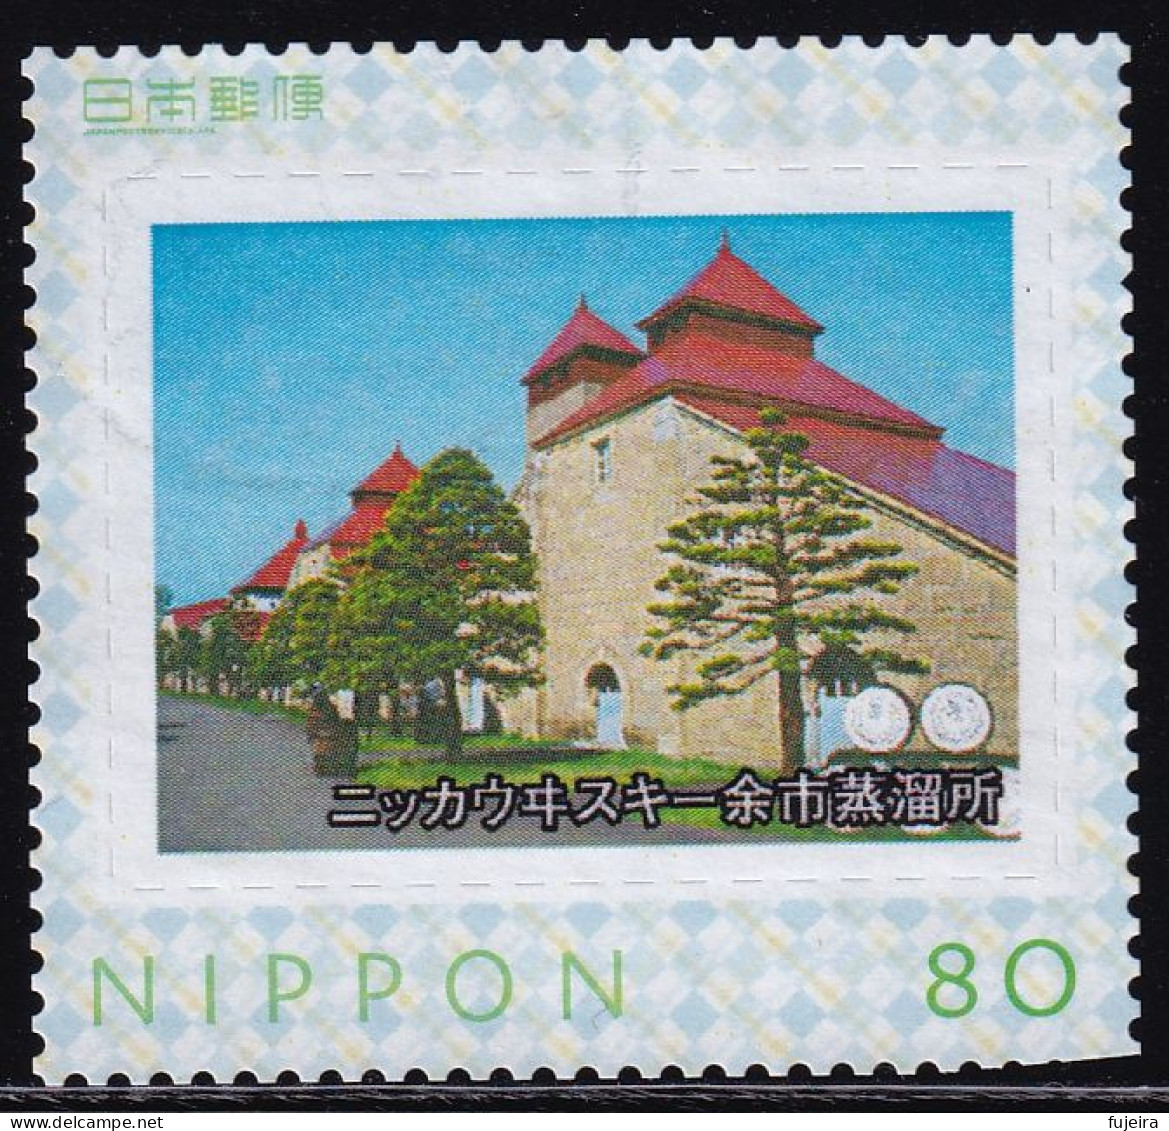 Japan Personalized Stamp, Distillery (jpv9945) Used - Gebruikt